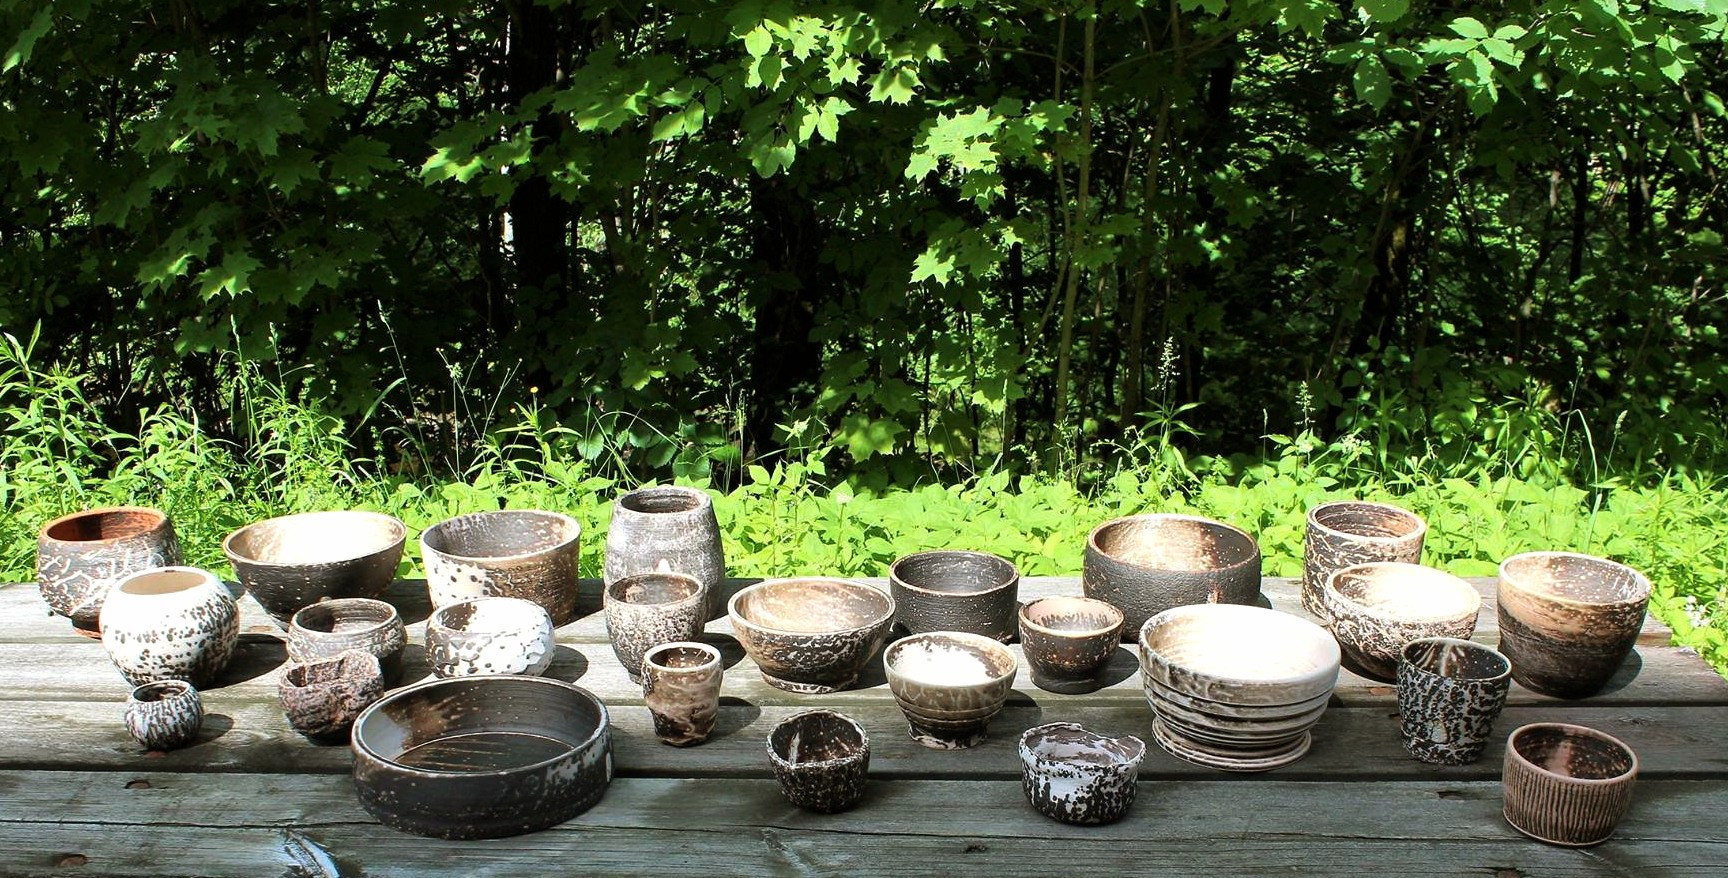 Et utebord med 25 brun-hvite keramiske boller i forskjellige former og størrelser. I bakgrunnen lysegrønne planter og trær.